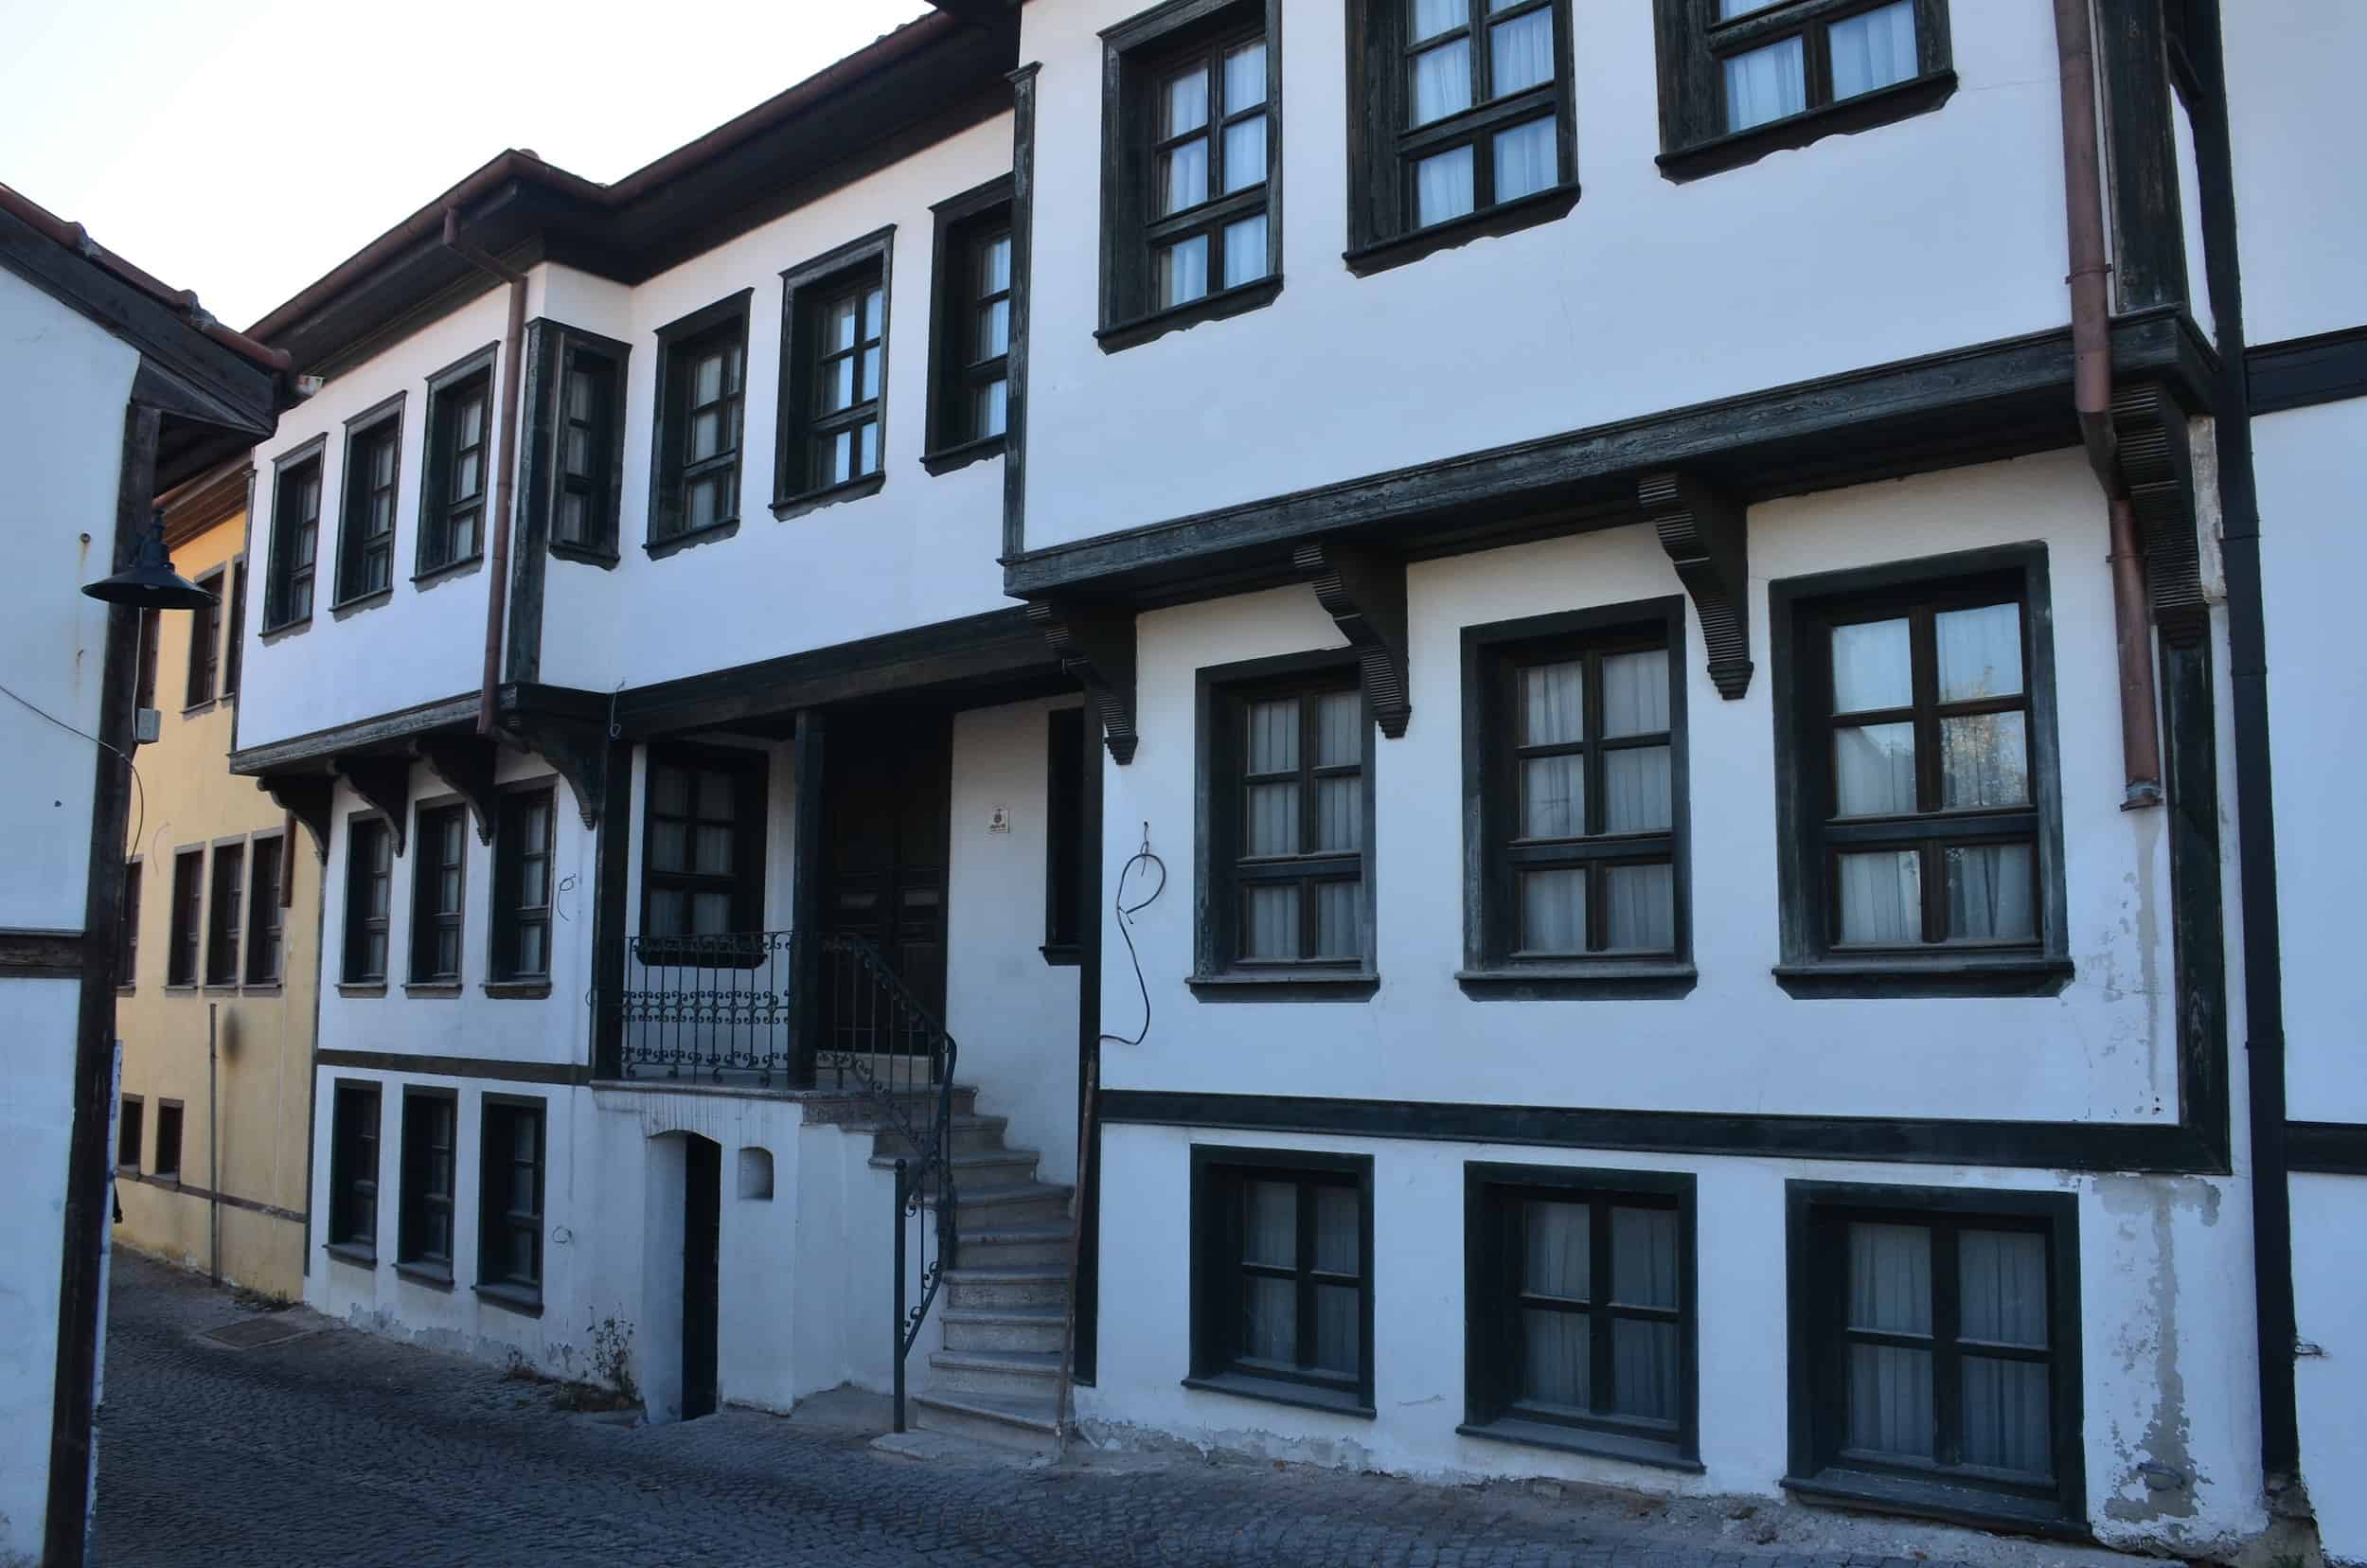 Ottoman home